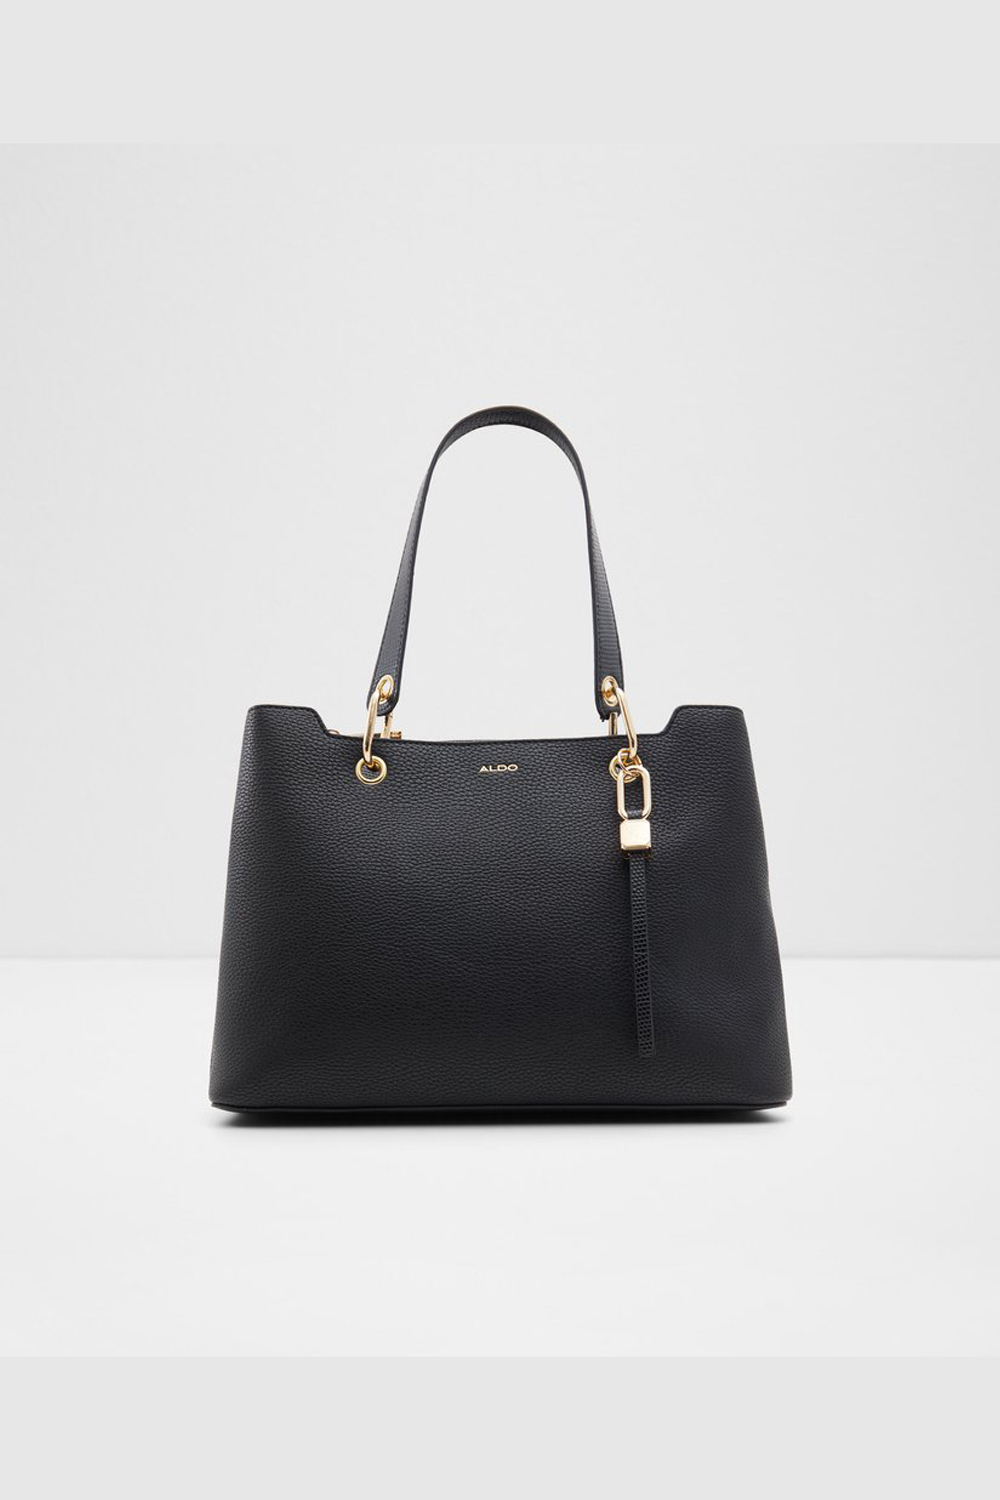 Aldo Coquette Women'S handbag | Odel.lk